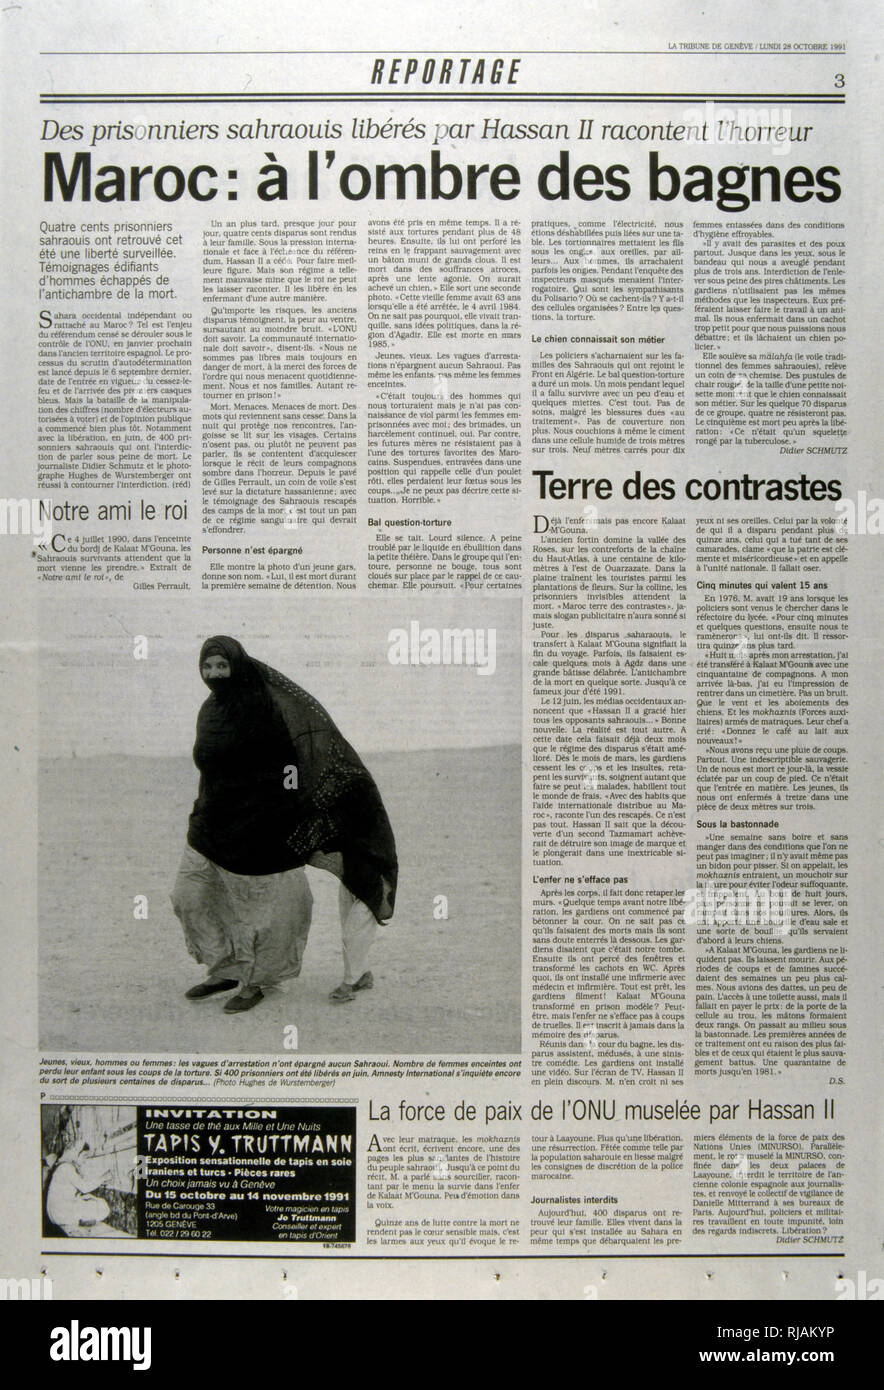 Il giornale svizzero "reportage" articolo in materia di tortura e di detenzione raccontata da centinaia di marocchini prigionieri politici liberati dal re Hassan II. Foto Stock